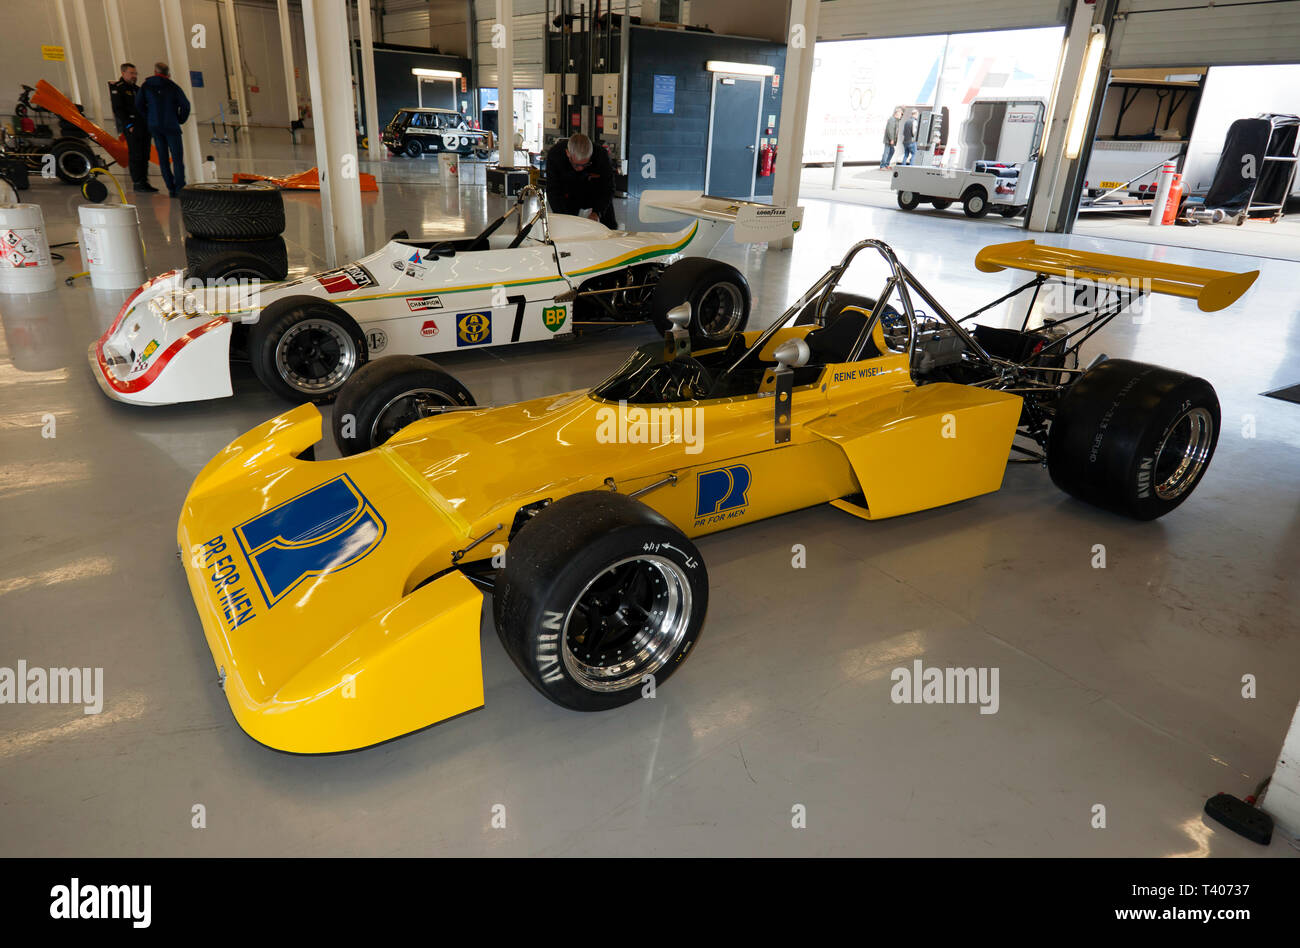 Storica Formula 2 Race Car precedentemente azionato da Reine Wisell, nella fossa internazionale Garage, durante il 2019 Silverstone Classic Media/giorno di prova Foto Stock